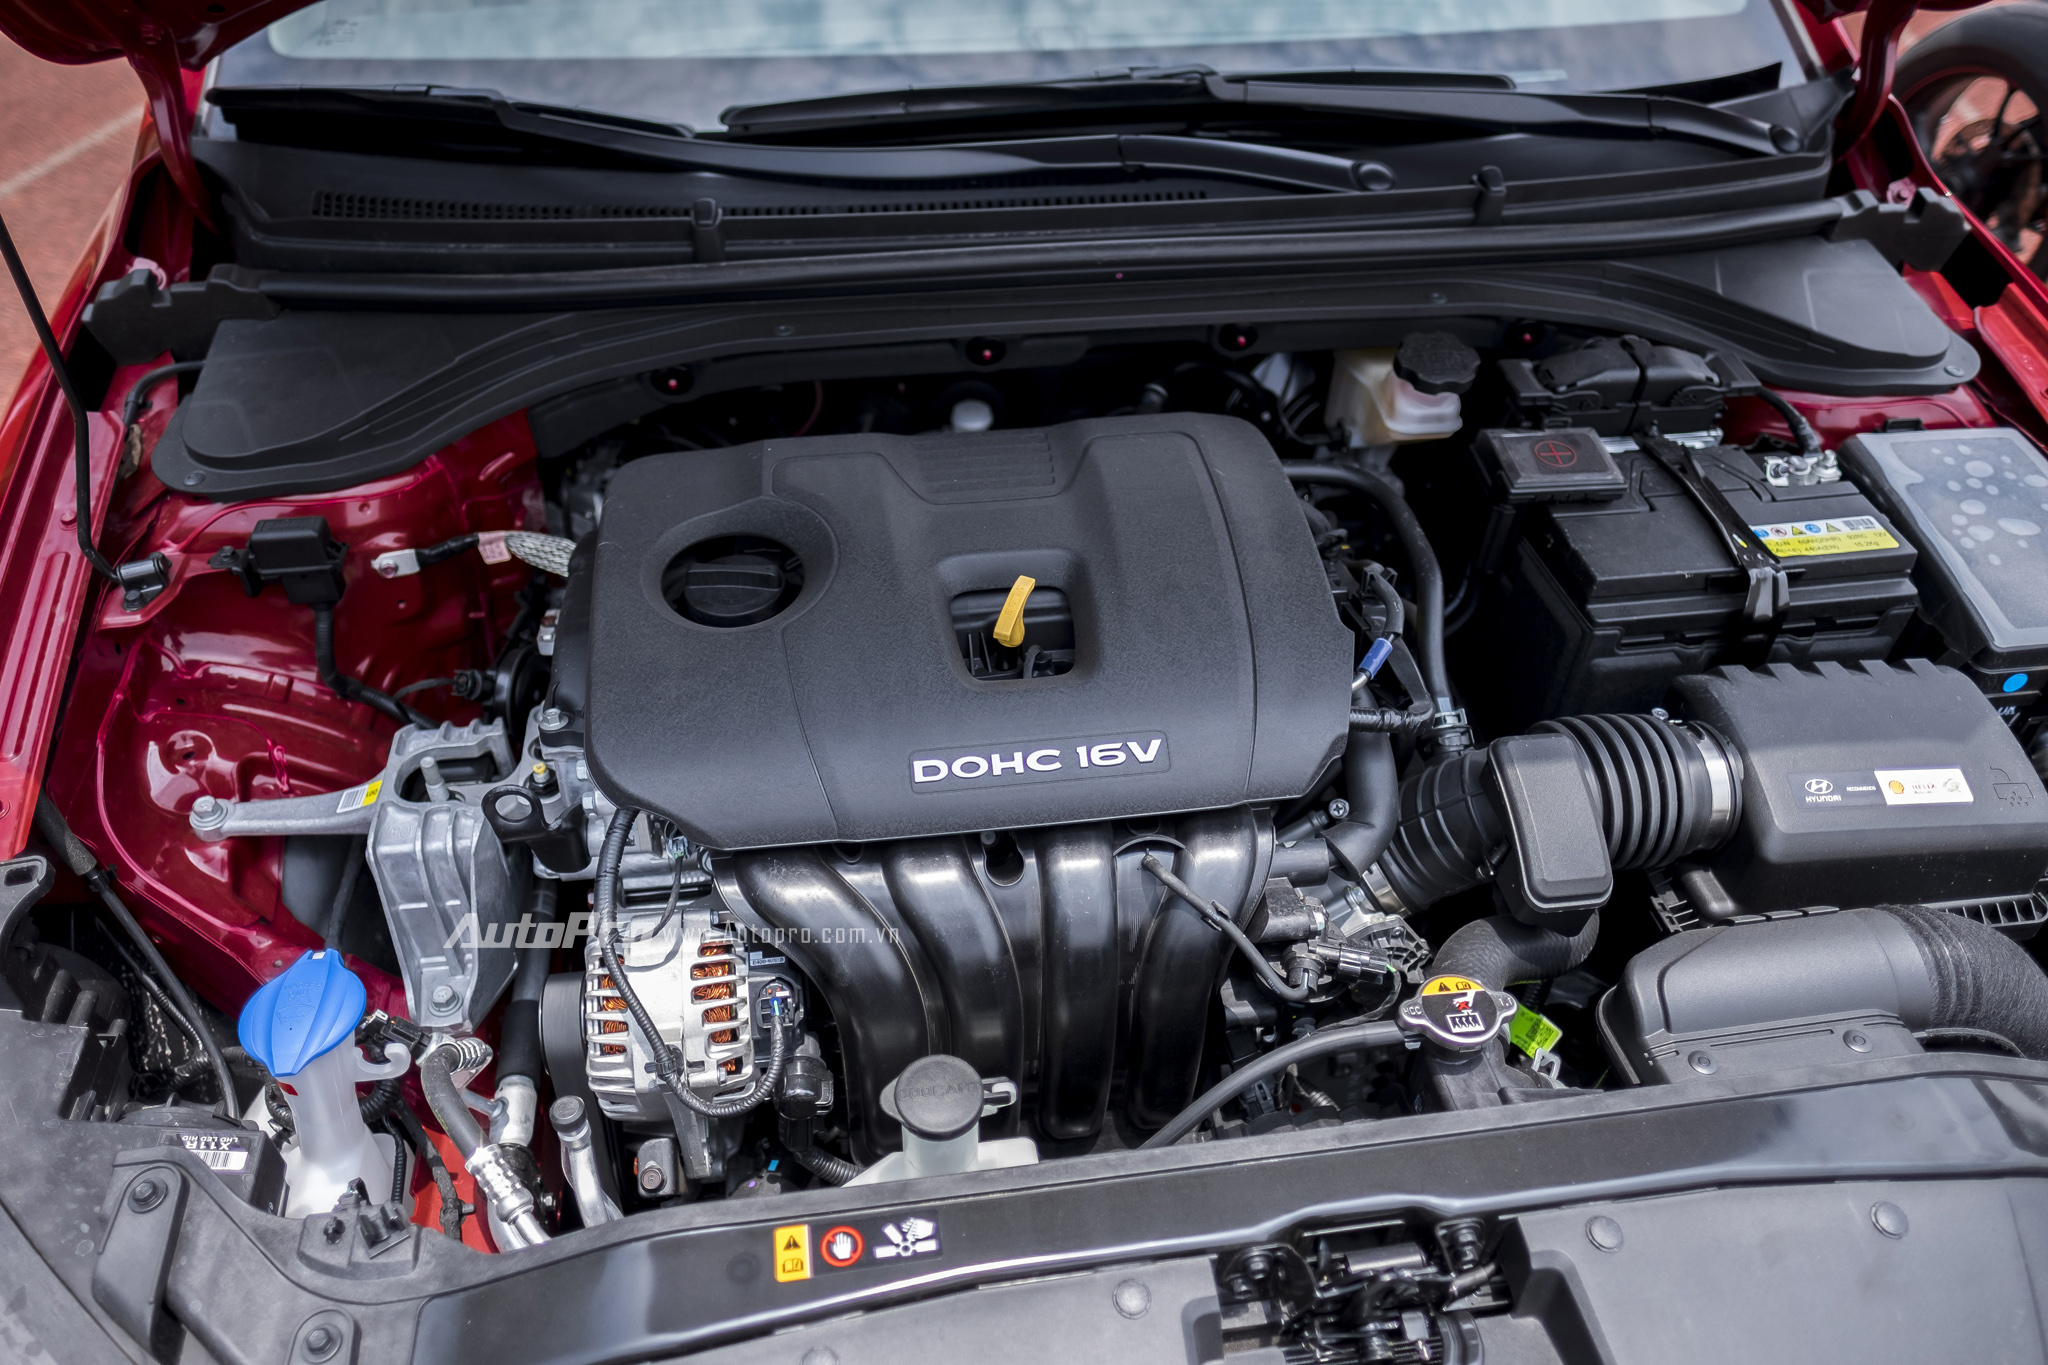 
Tại Việt Nam, Hyundai Elantra 2016 được phân phối với 2 tùy chọn động cơ khác nhau. Đầu tiên là động cơ xăng Nu 2.0L cho công suất tối đa 156 mã lực tại 6.200 vòng/phút và mô-men xoắn cực đại 196 Nm tại 4.000 vòng/phút. Thứ hai là động cơ xăng Gamma II 1.6L có công suất tối đa 128 mã lực tại 6.300 vòng/phút và mô-men xoắn cực đại 154,5 Nm tại 4.850 vòng/phút.
